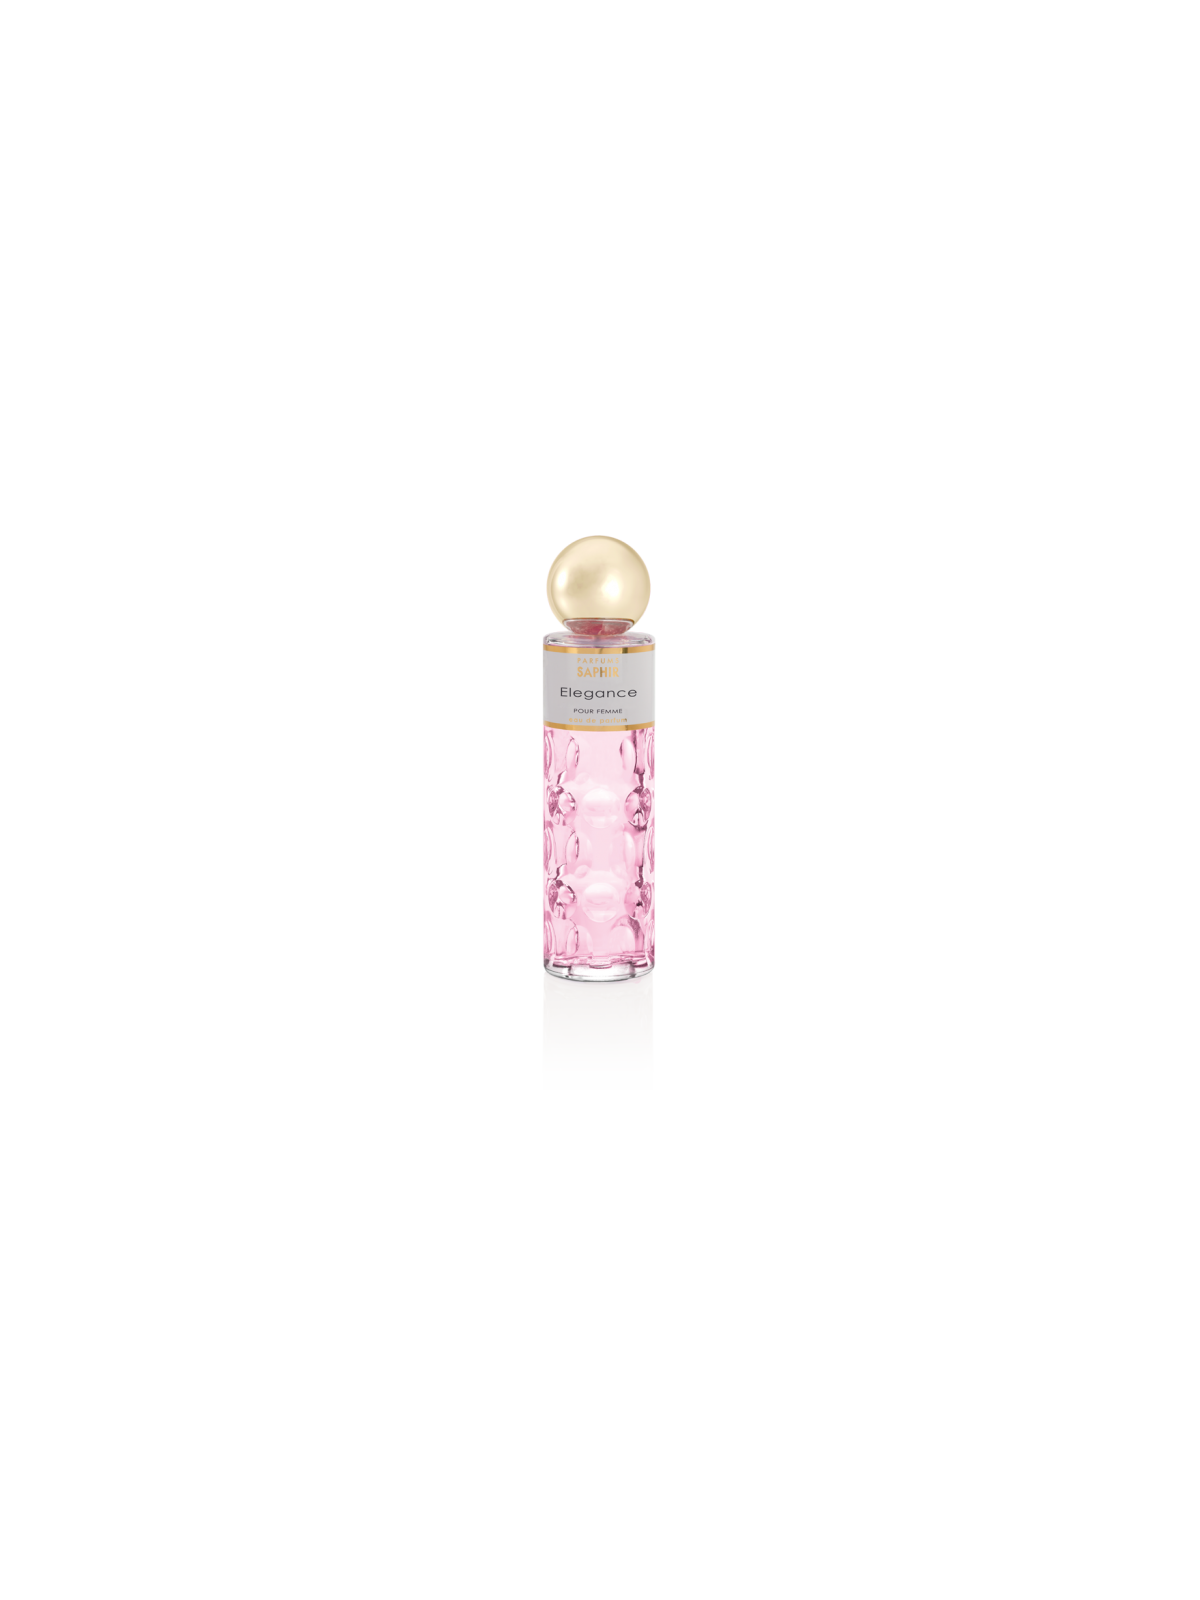 Comprar Perfume SAPHIR Elegance 200ml. en Perfumes para mujer por sólo 13,90 € o un precio específico de 13,90 € en Thalie Care